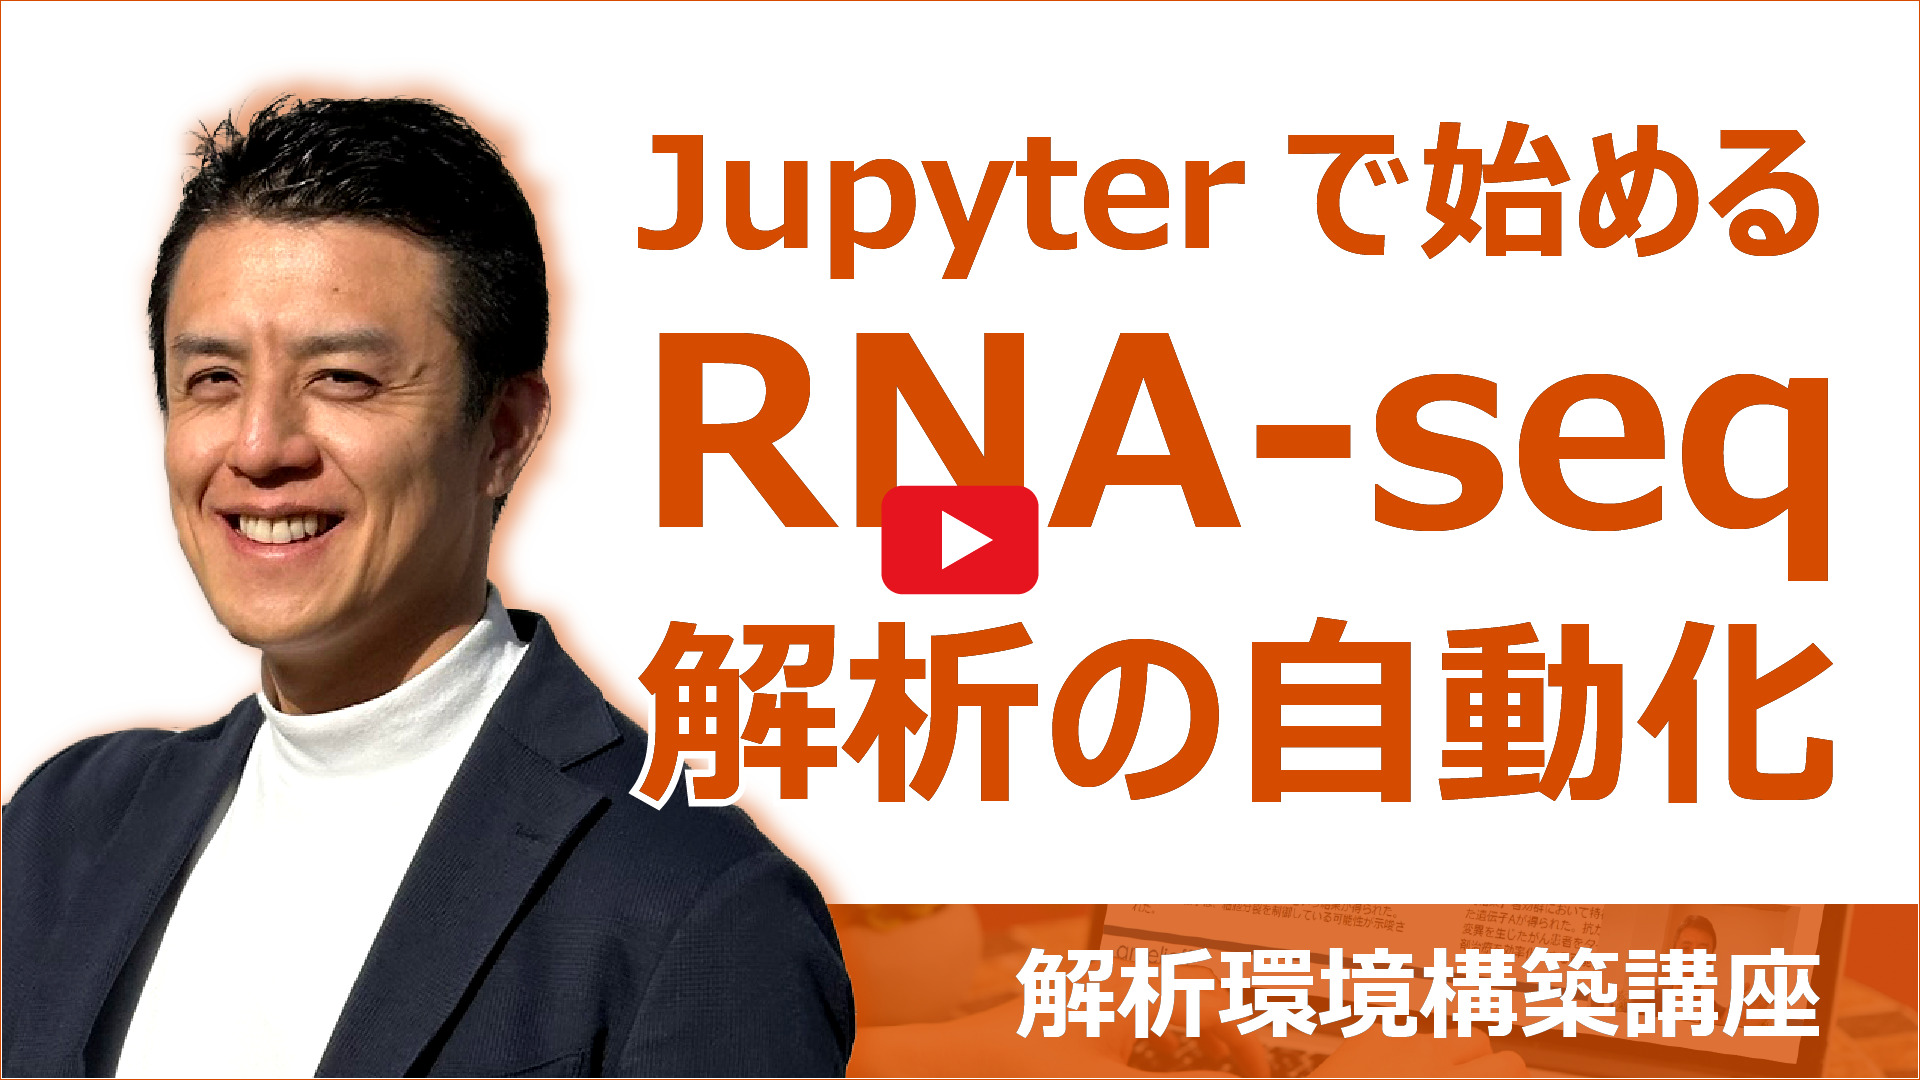 Jupyterで始めるRNA-seq解析の自動化動画